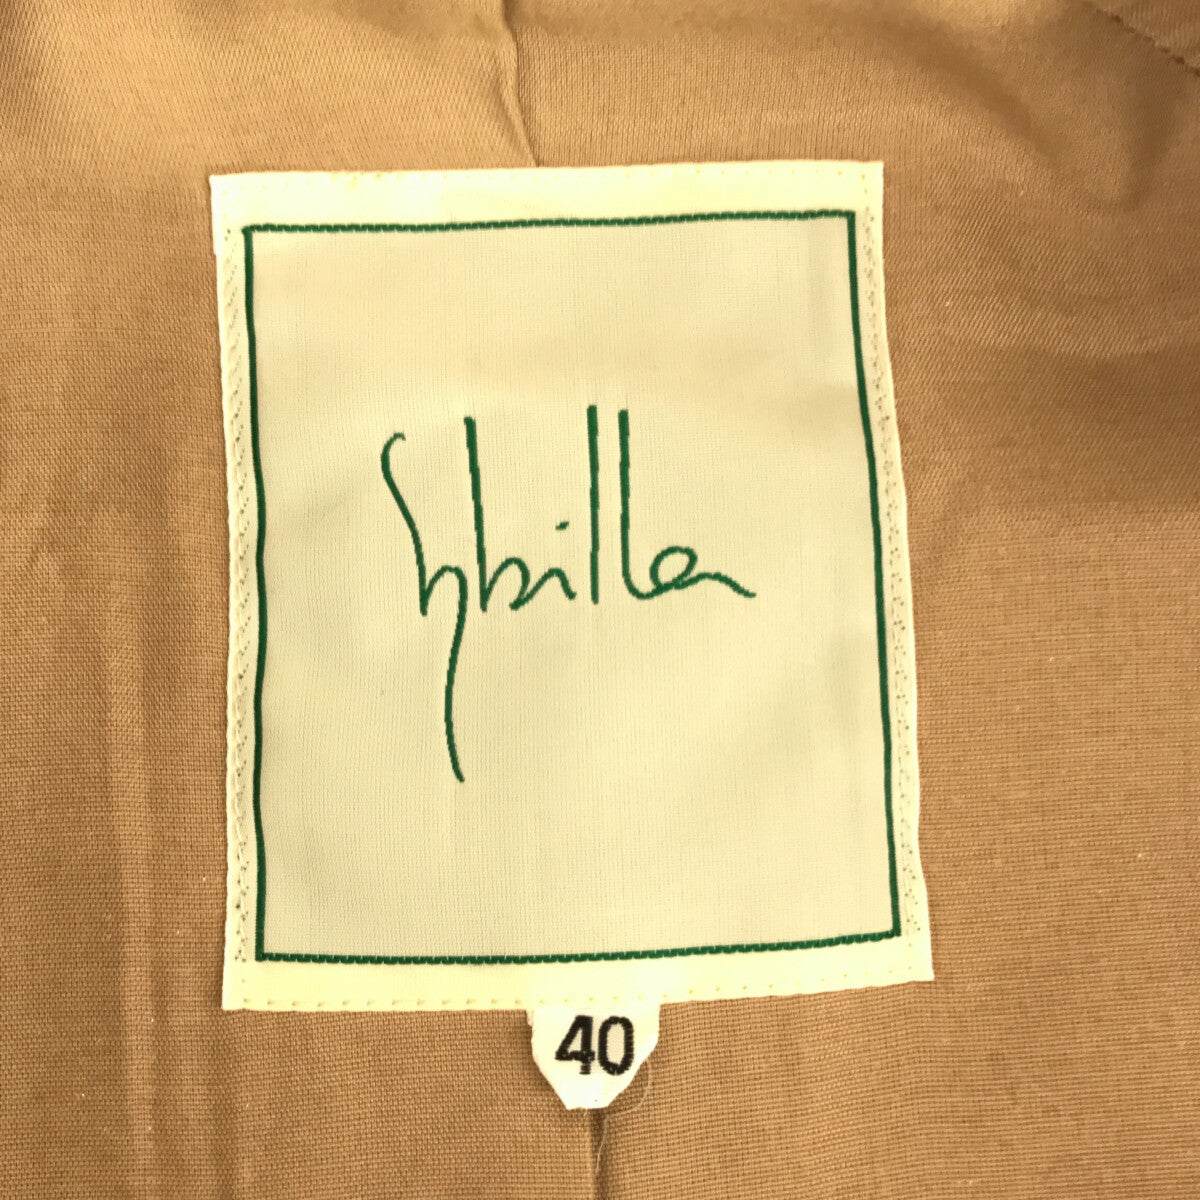 SYBILLA / シビラ | ウール混 ラグランスリーブコート | 40 | イエローグリーン | レディース